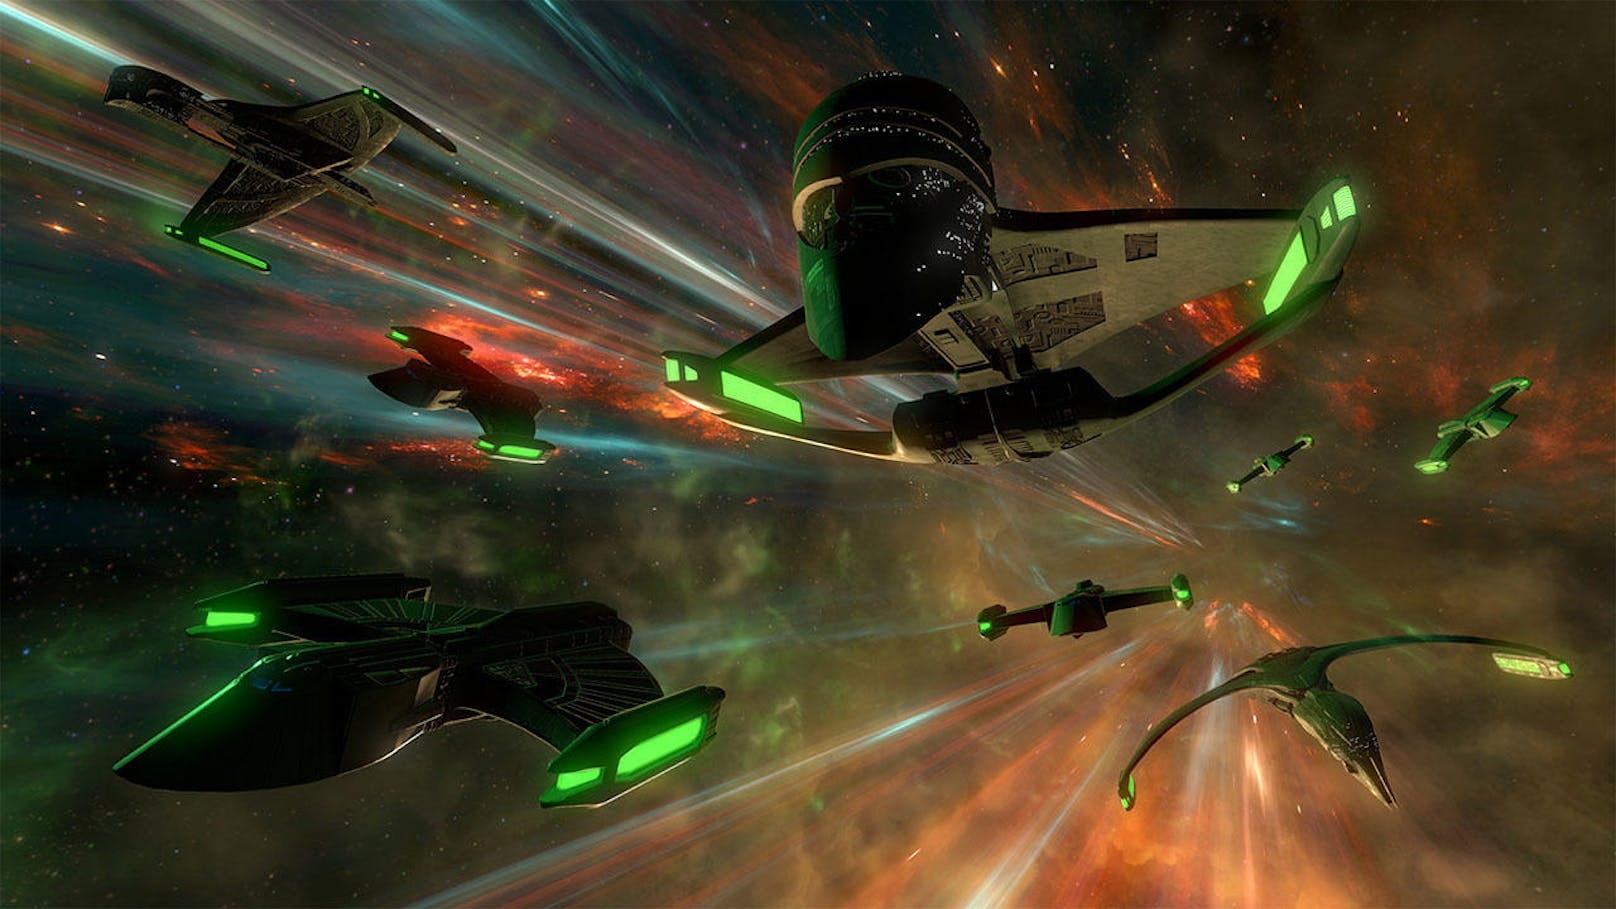 Ubisoft kündigte an, dass die Erweiterung Star Trek: Bridge Crew - The Next Generation ab sofort für PlayStation VR und PlayStation 4 erscheint. Das Spiel wird mit und ohne VR spielbar sein. Auf dem PC wird das Spiel am 24. Juli 2018 erscheinen und kompatibel mit der HTC VIVE, Oculus Rift und der Windows Mixed Reality sein. Ebenso wird die Erweiterung, wie auch das Hauptspiel, ohne VR- Gerät spielbar sein. Der DLC wurde von Red Storm Entertainment entwickelt und ermöglicht es dem Spieler, das Star Trek Universum mit dem Galaxy Class Raumschiff U.S.S Enterprise NCC-1701-D aus Star Trek: The Next Generation zu entdecken. Die Kampffähigkeiten der U.S.S Enterprise werden vor von den rätselhaften Romulanern und den bei Fans beliebten erbarmungslosen Borg auf die Probe gestellt.